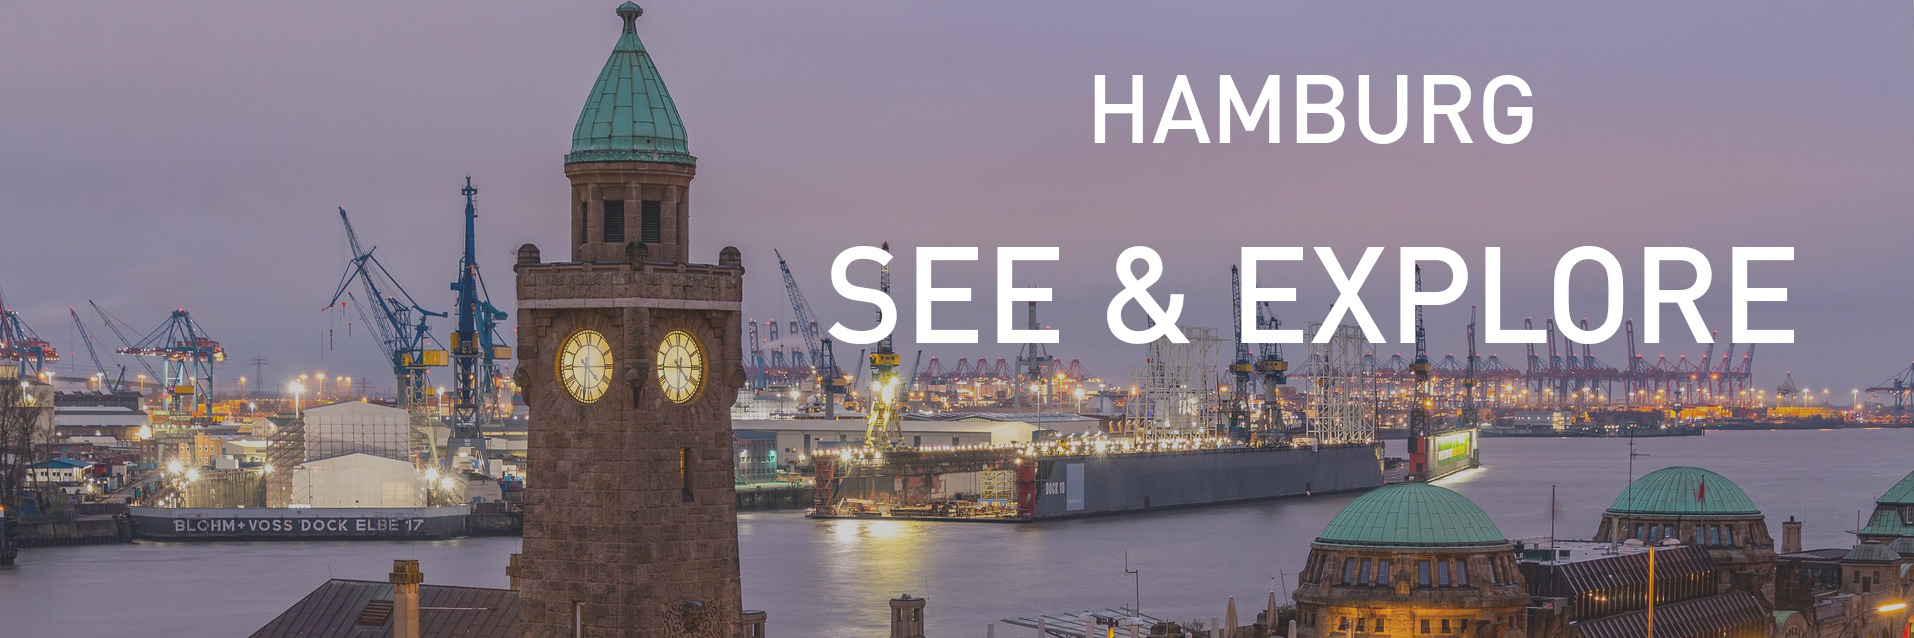 Hamburg See & Explore